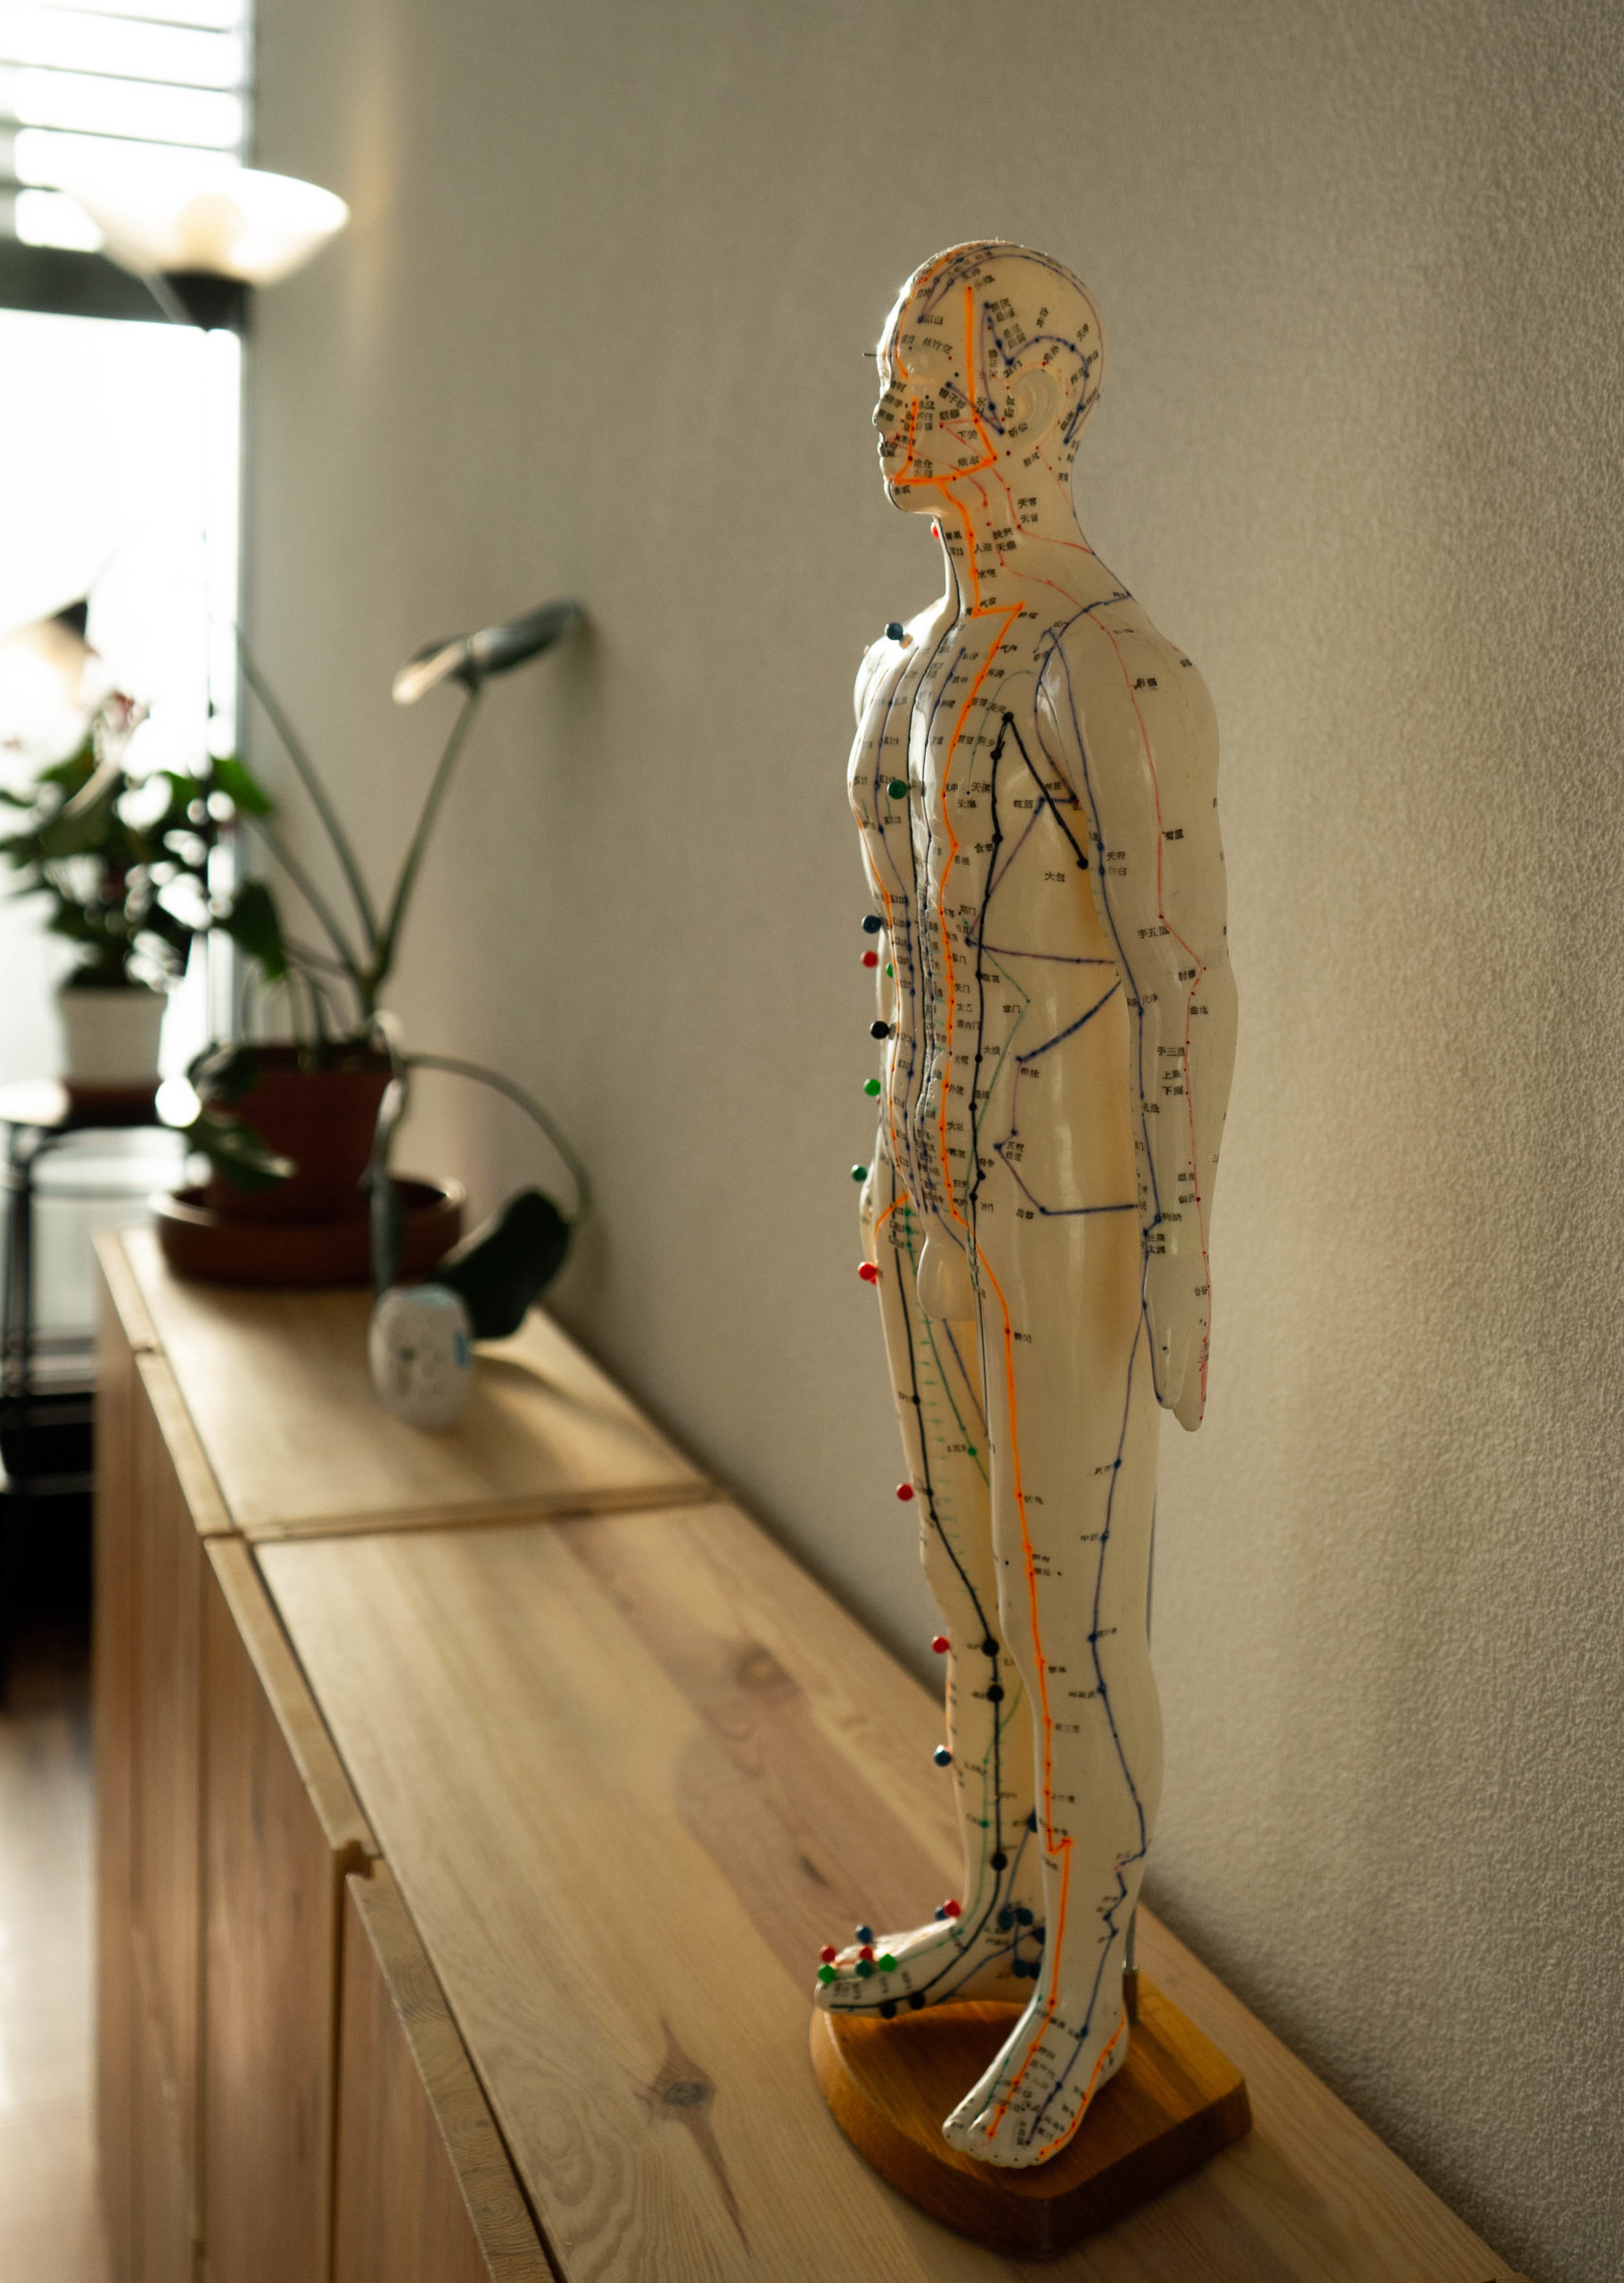 Modèle anatomique d'un homme montrant les points d'acupuncture sur le corps.